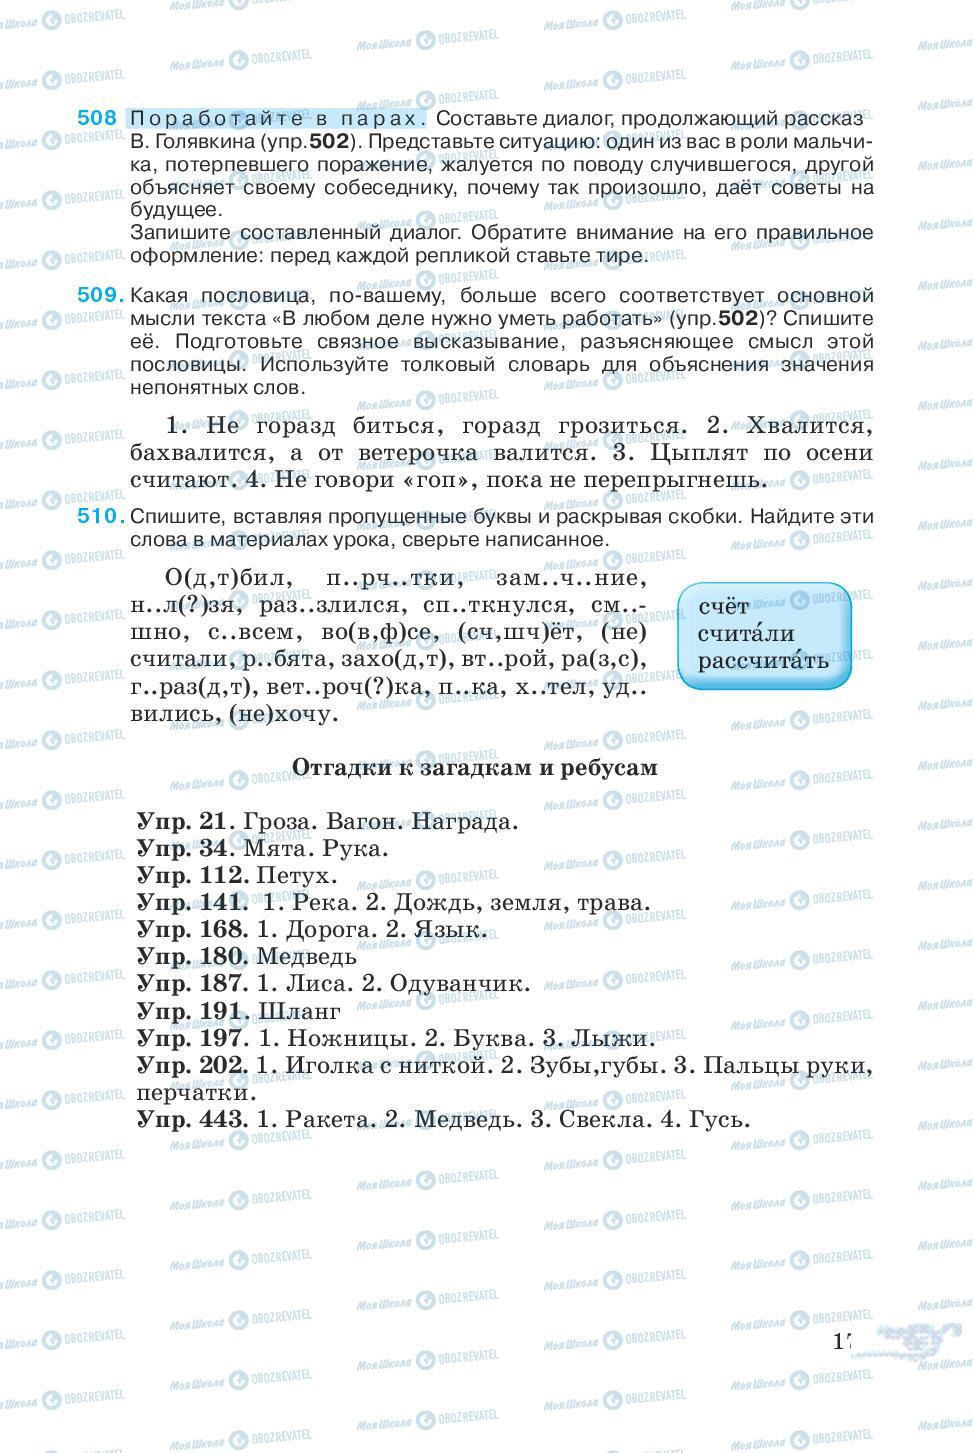 Учебники Русский язык 5 класс страница 171